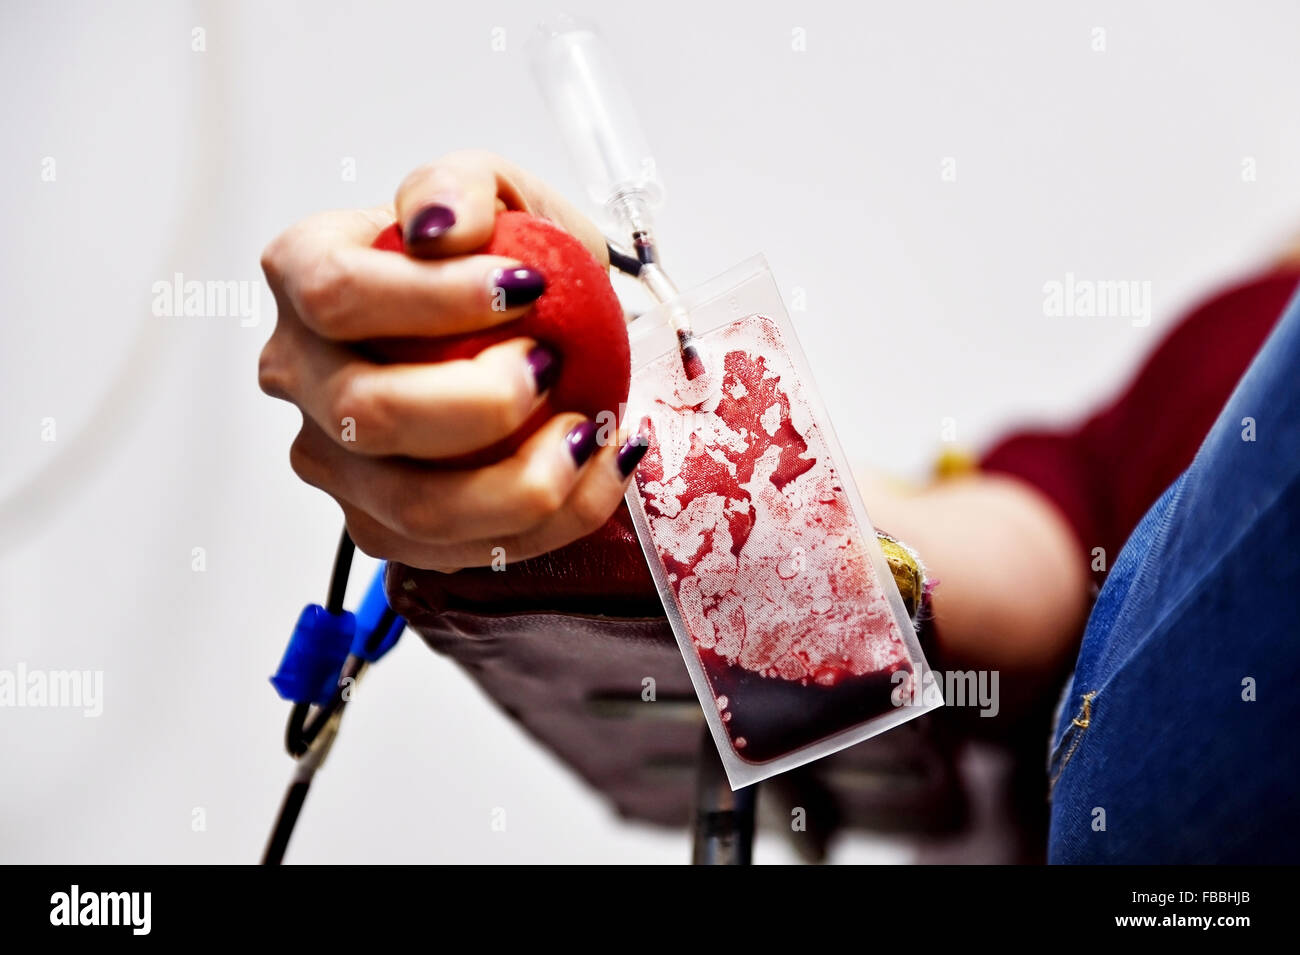 Dettaglio con la mano di un donatore di sangue la spremitura di una palla medica e una plastica sacca di sangue in un ospedale Foto Stock